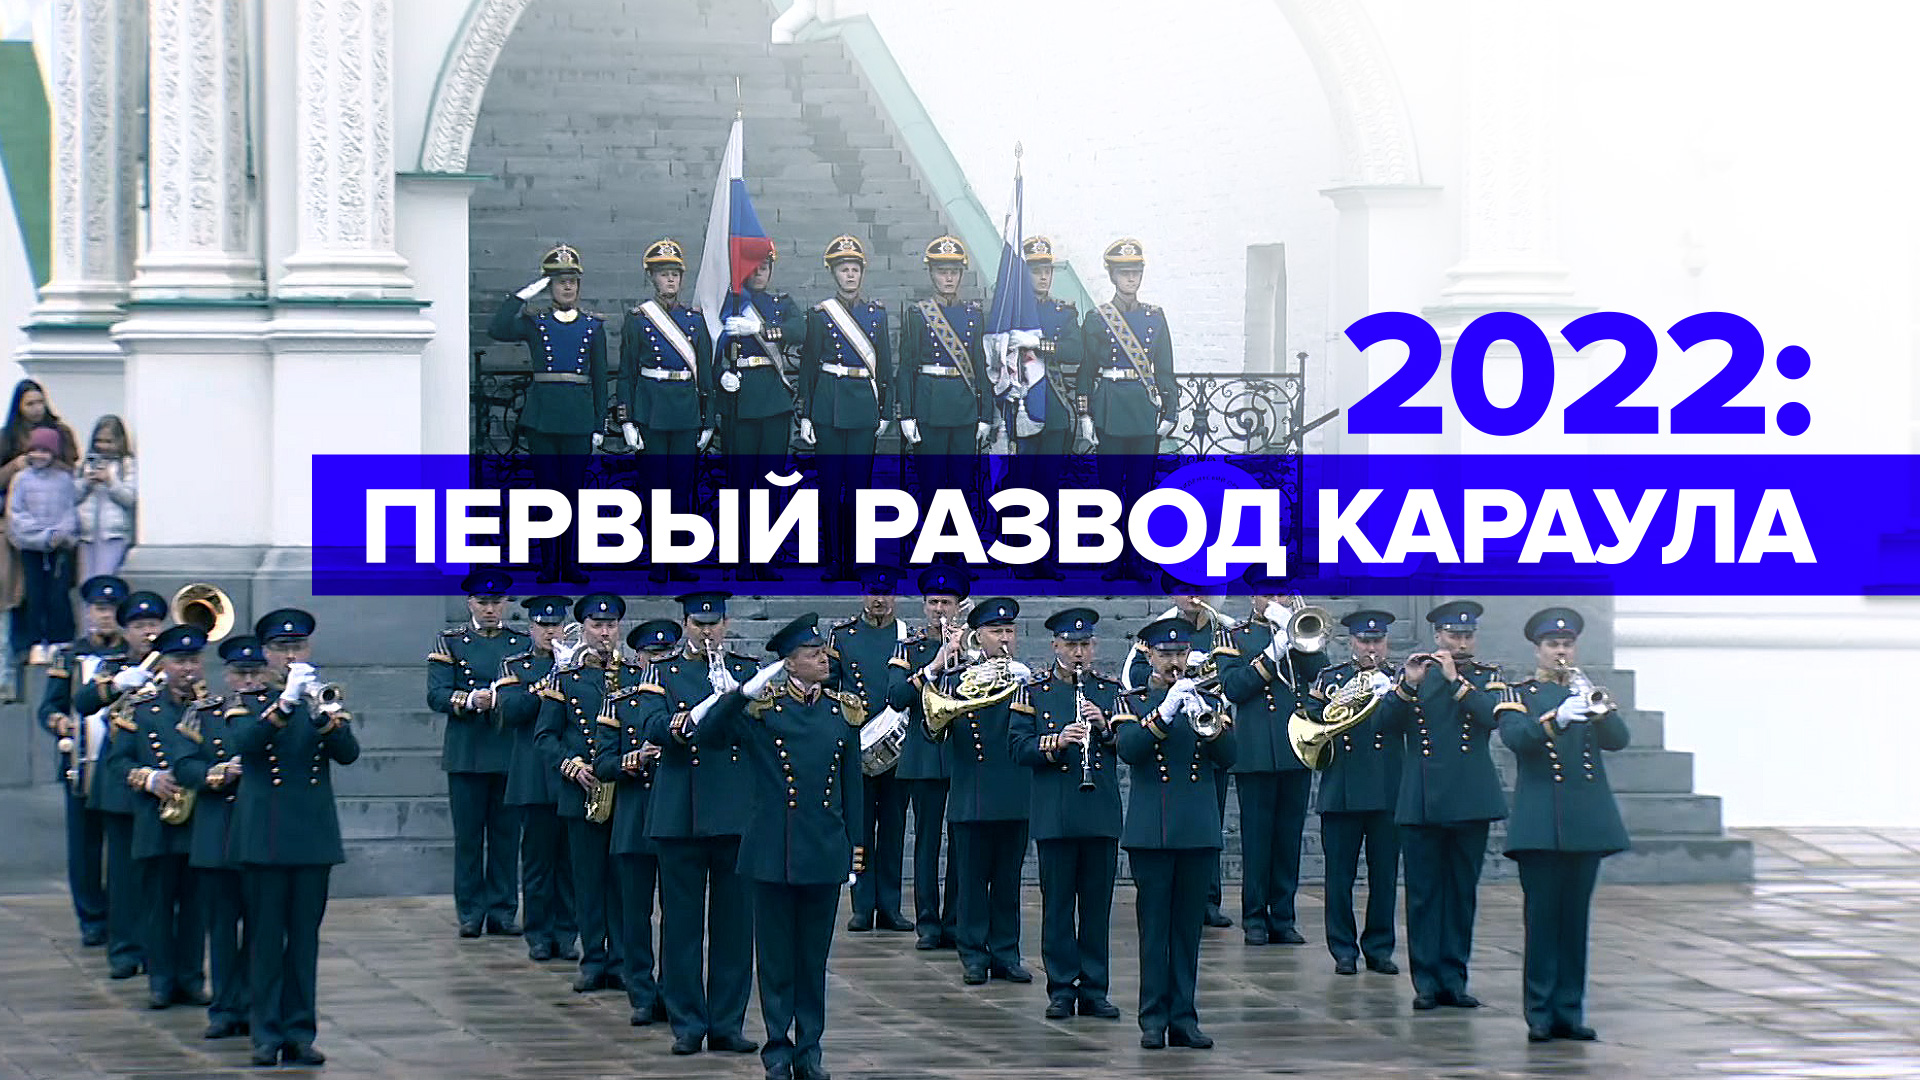 В Москве прошёл первый в году развод караулов — видео